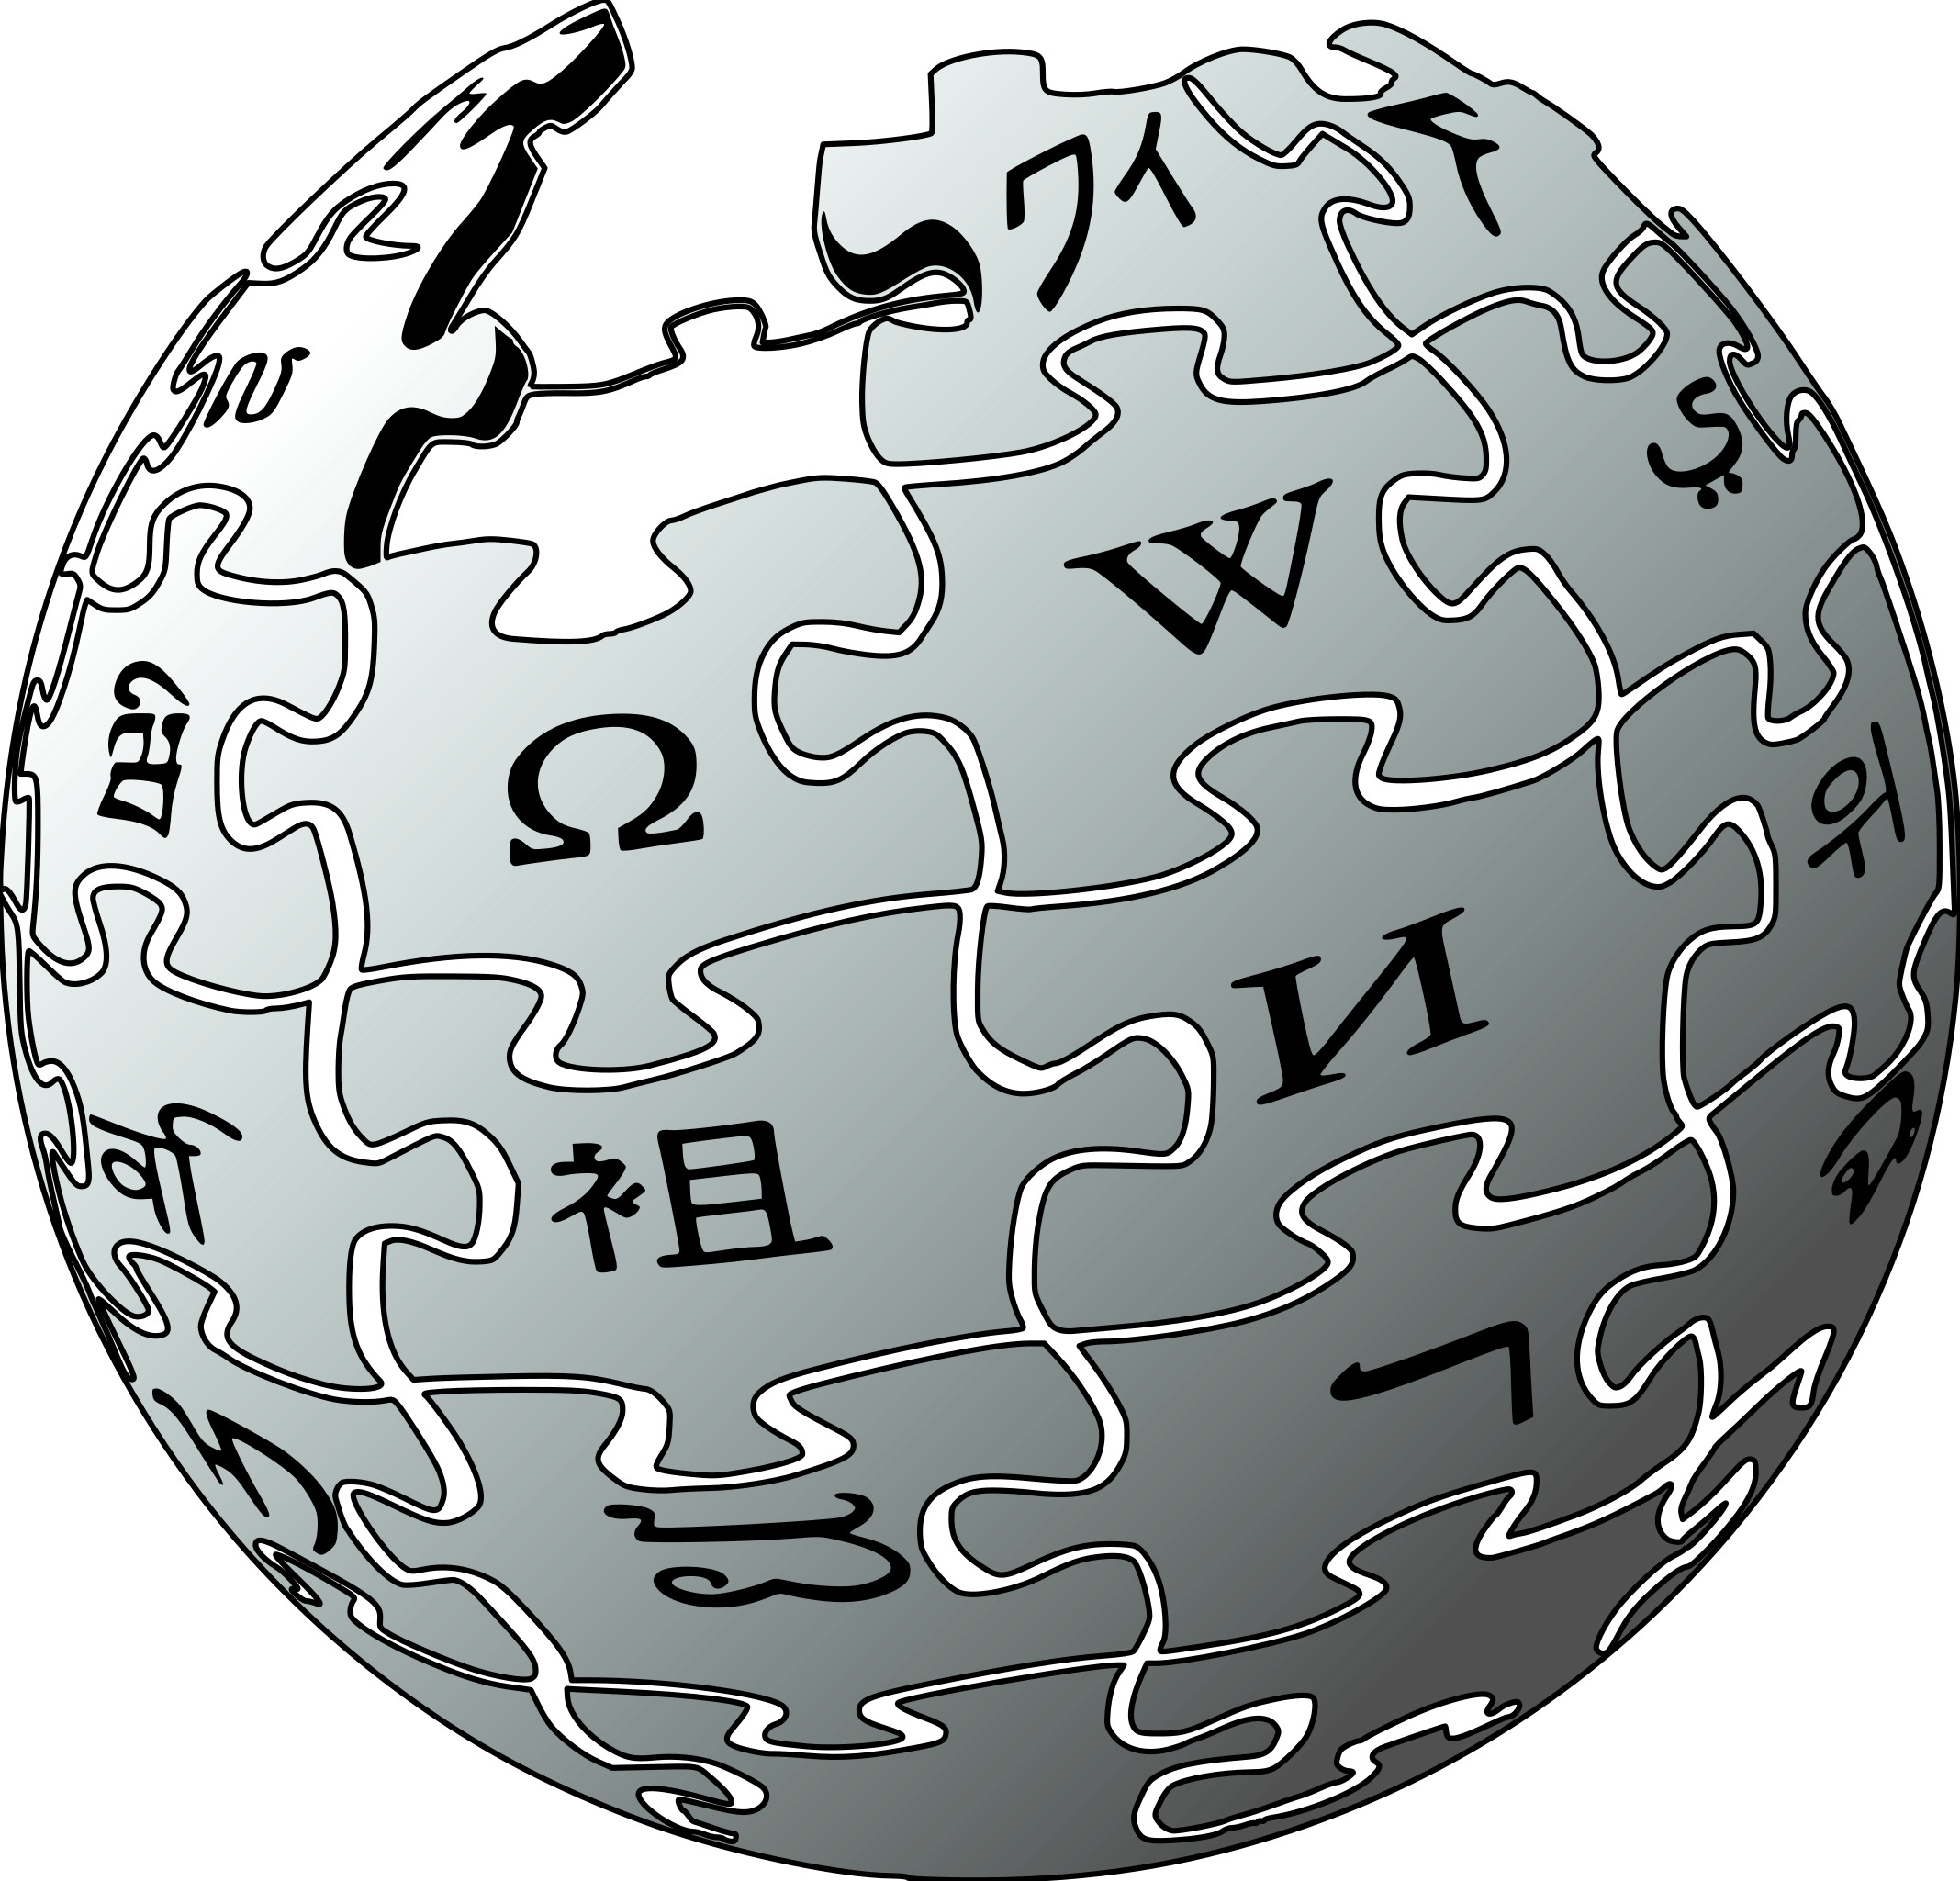 Значок Википедии. Википедия логотип. Википедия картинки. Логотип Википедии на прозрачном фоне. Https www wikipedia